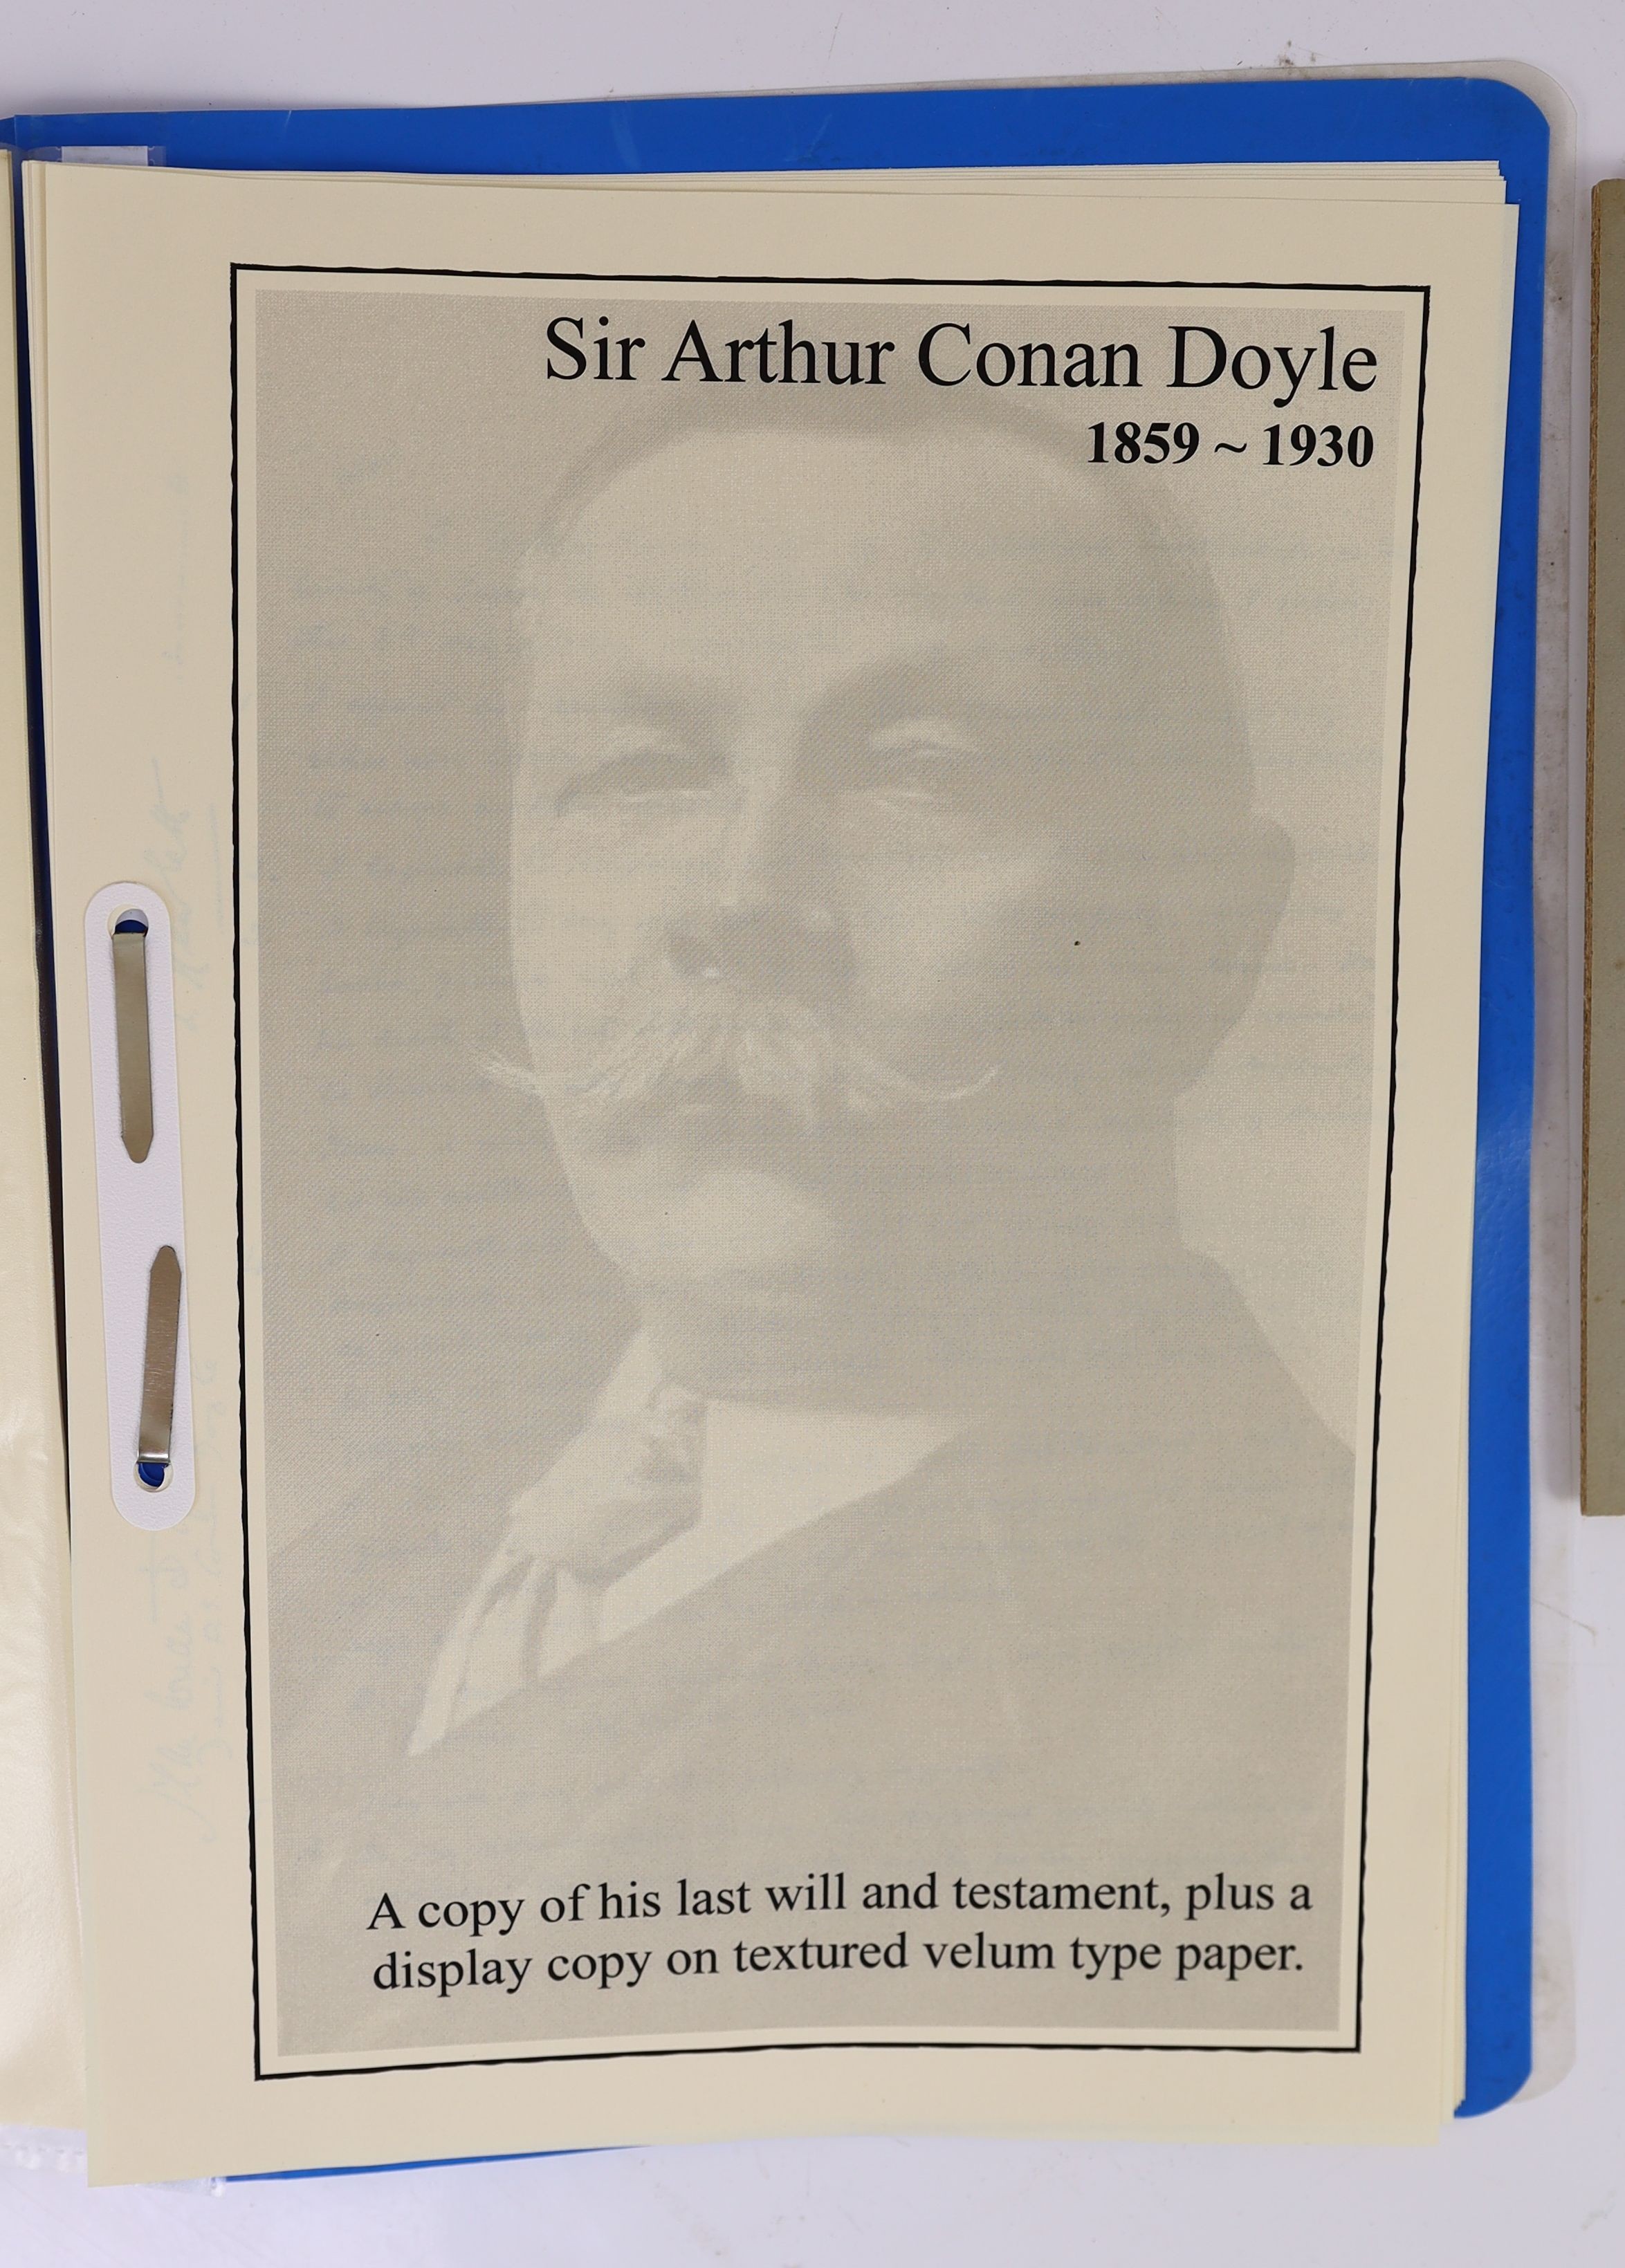 Doyle, Arthur Conan, Sir - Autograph letter